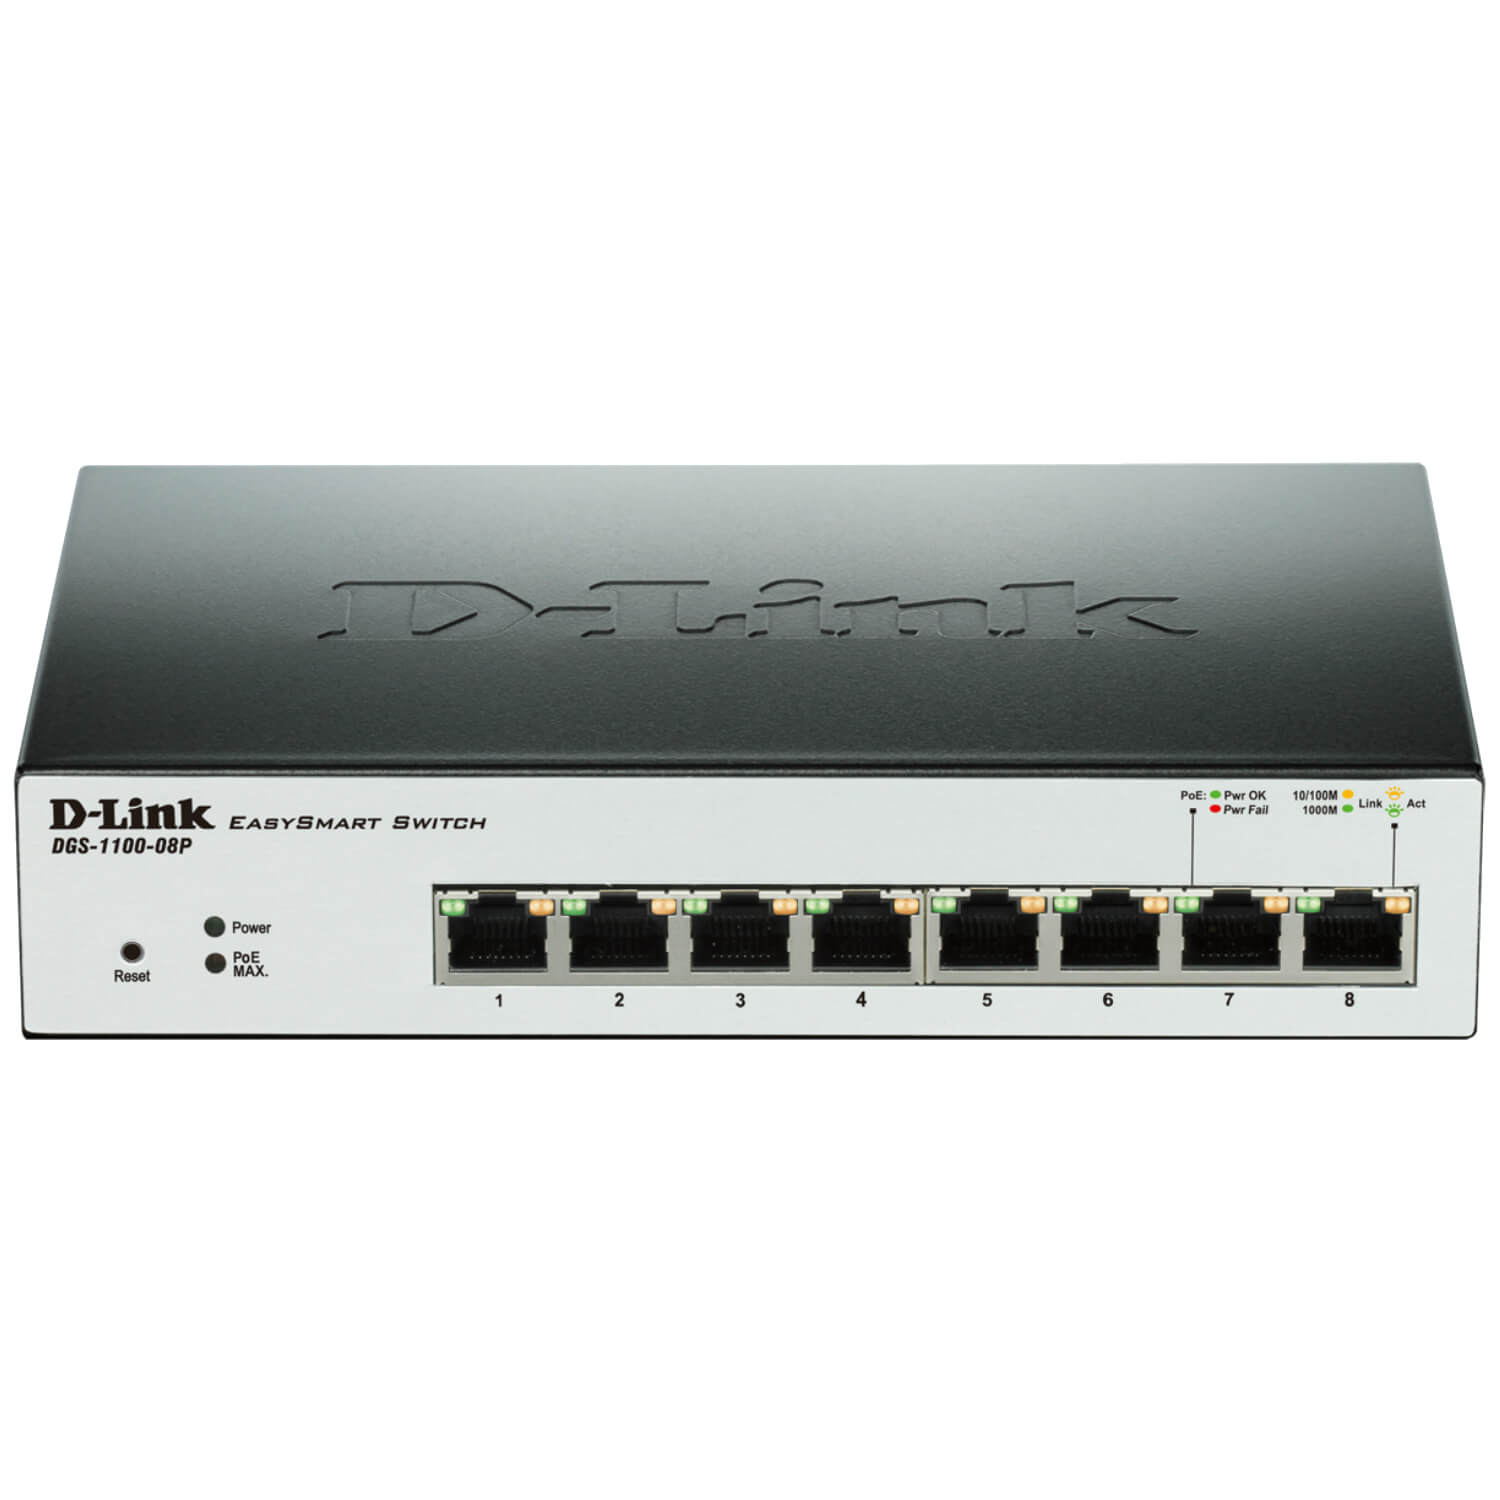  Switch D-Link DGS-1100-08P, 8 porturi, 10/100/1000 Mbps 